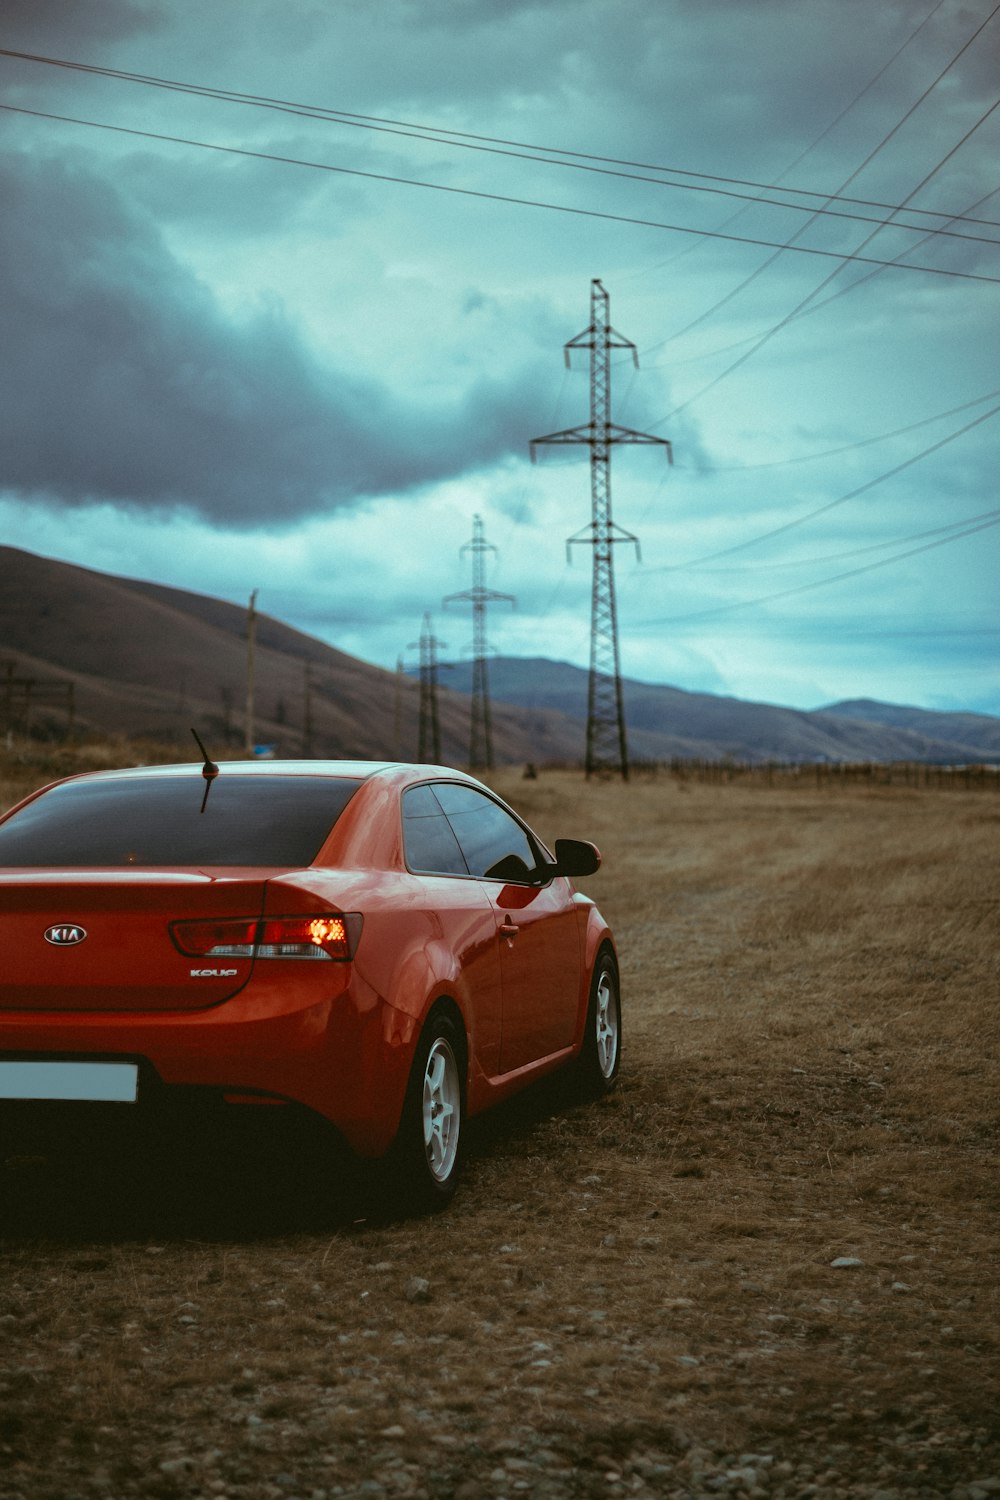 Hyundai coupé rossa vicino alla torre di trasmissione